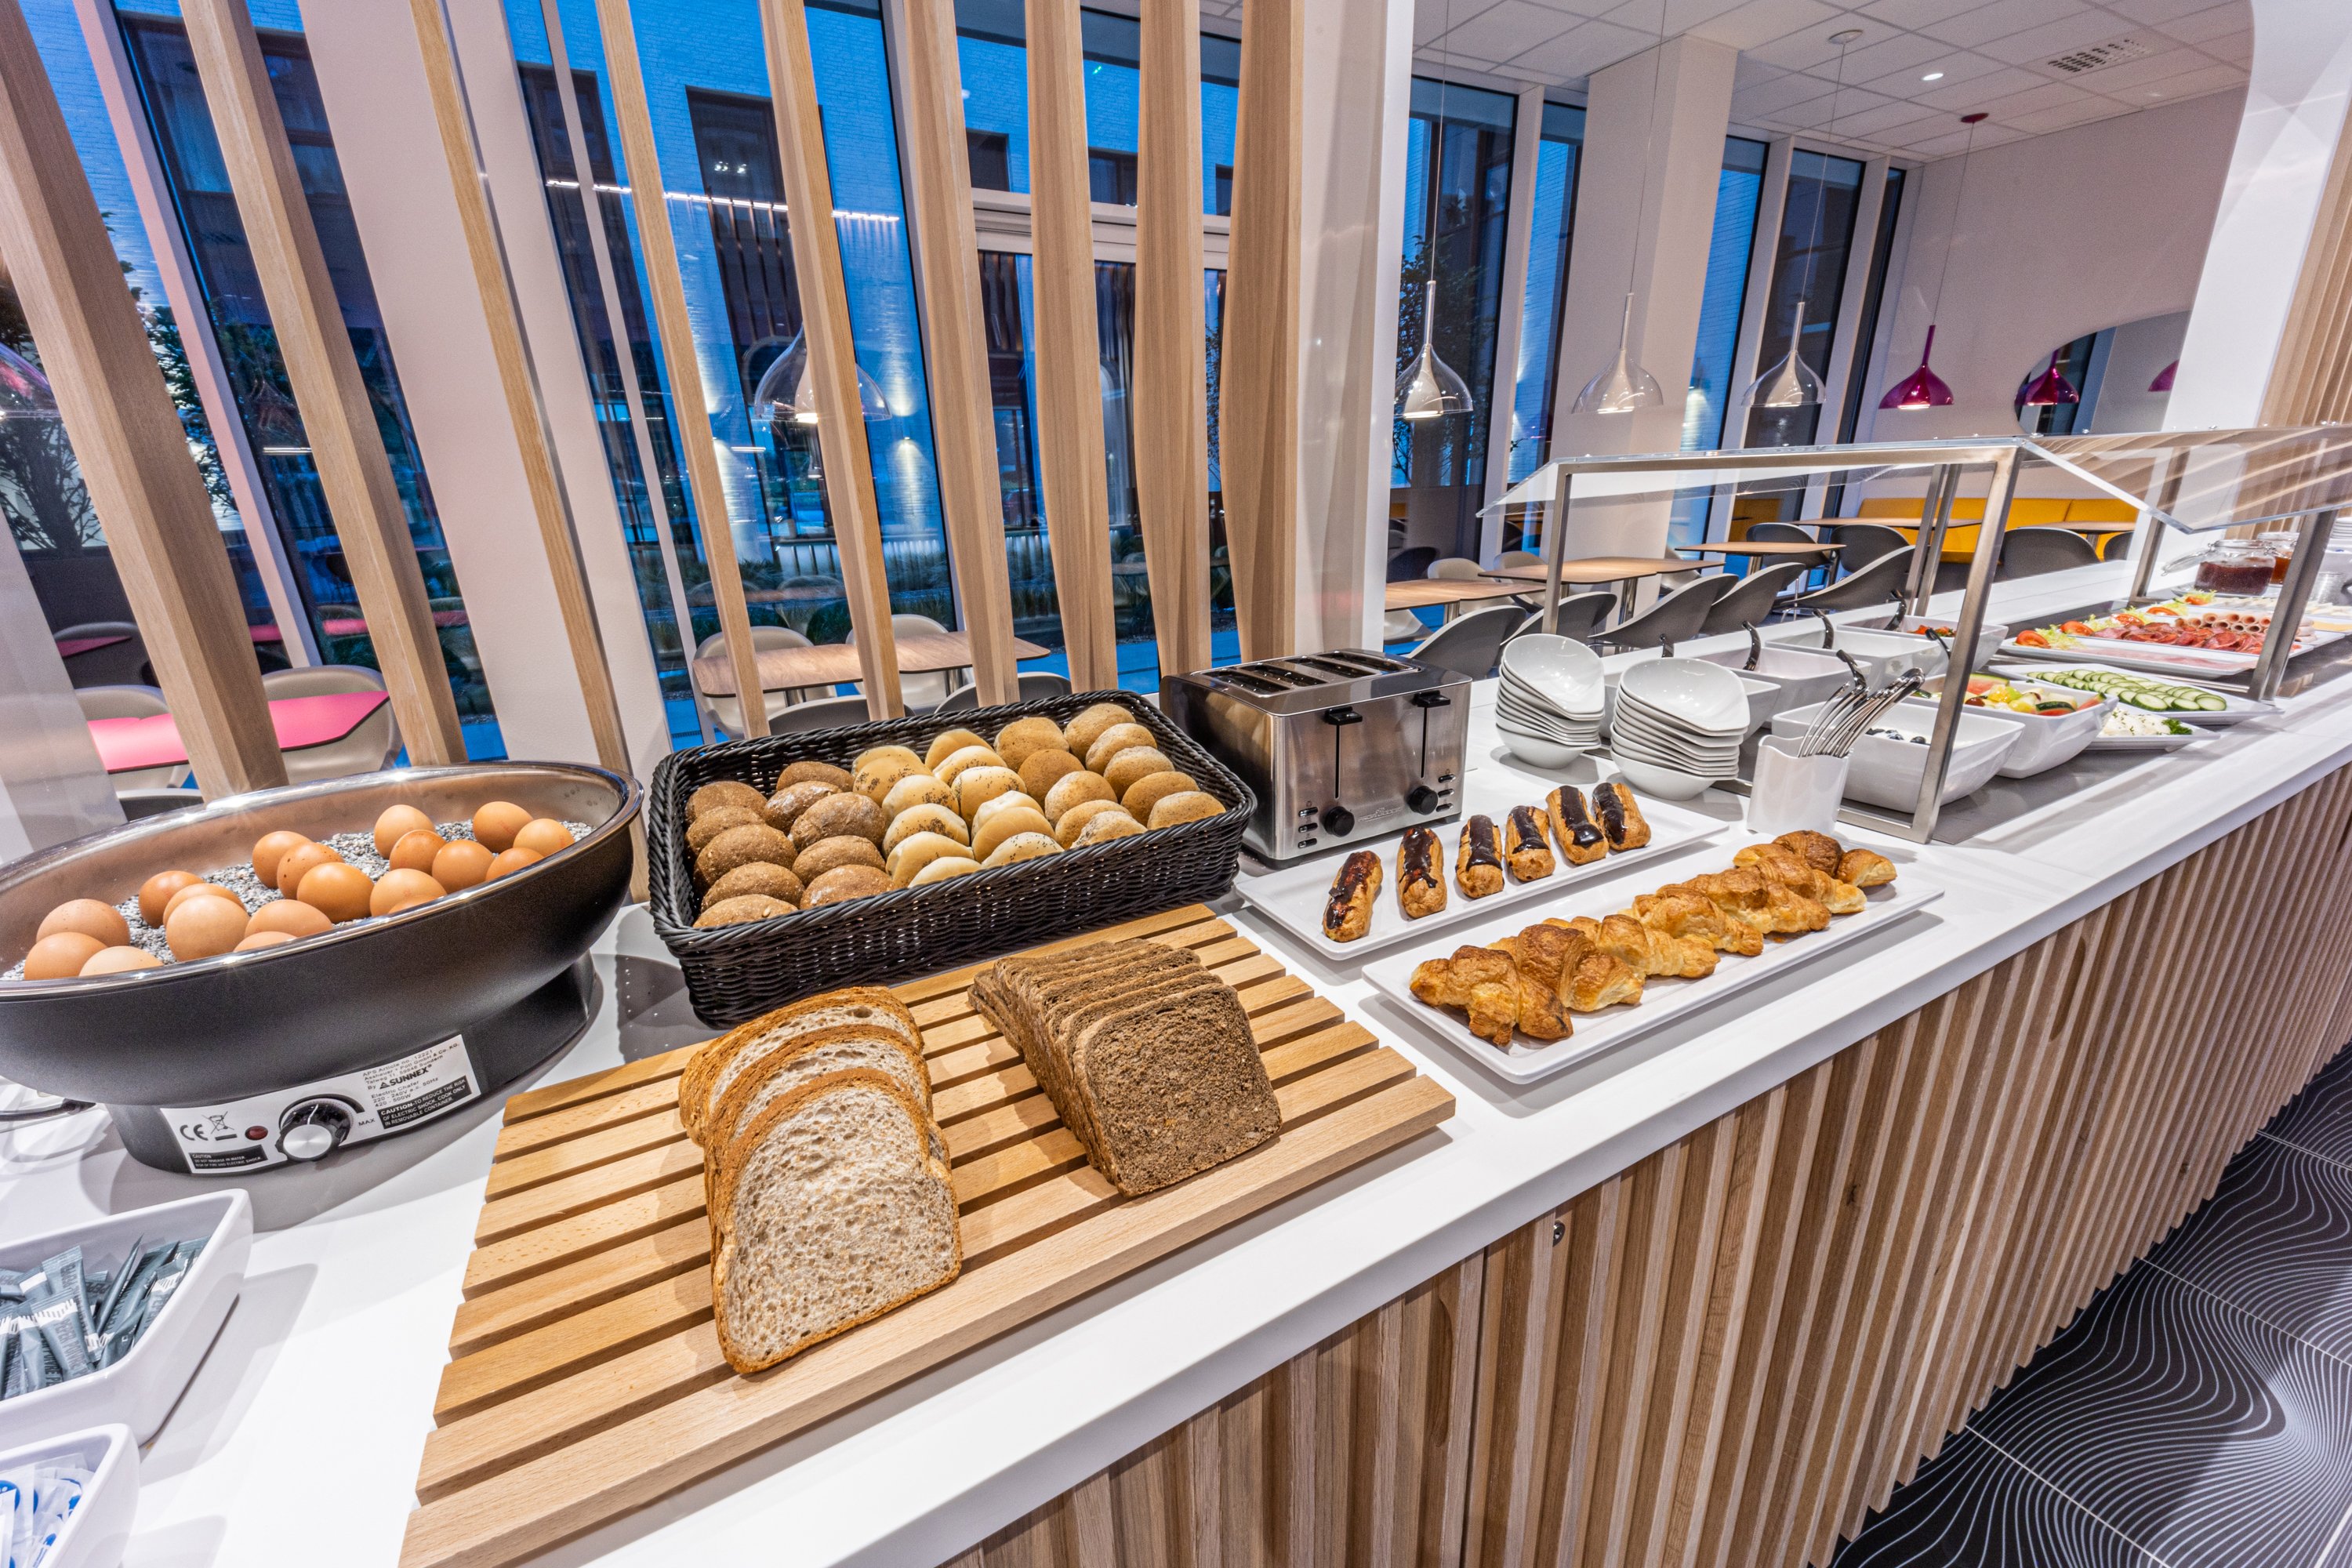 Das Frühstücksbuffet in Antwerpen mit leckerem Brot, gekochten Eiern und süßem Gebäck